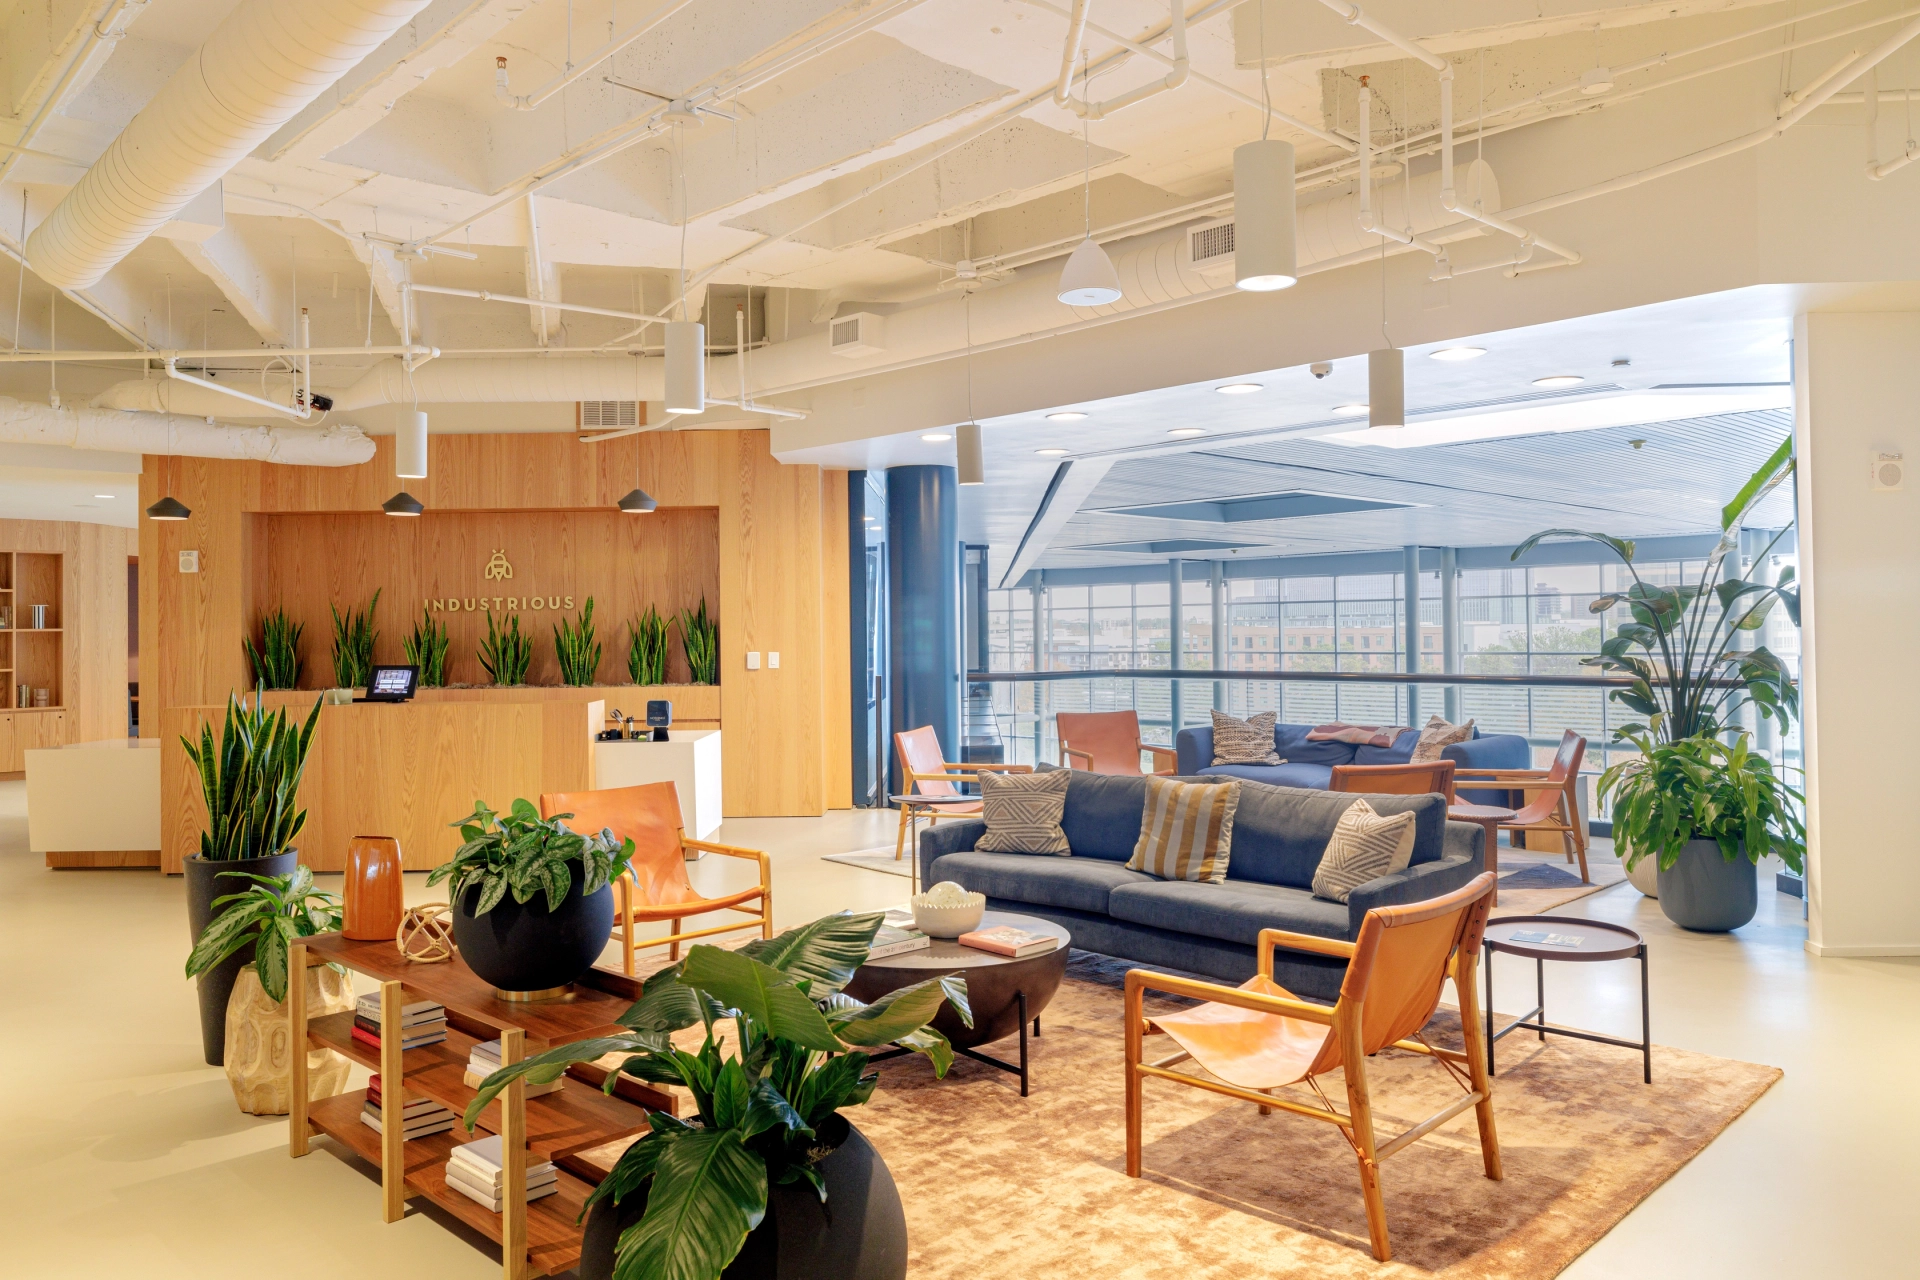 Un espace de coworking collaboratif à Atlanta avec un bureau ouvert spacieux orné de canapés confortables et de plantes vibrantes.